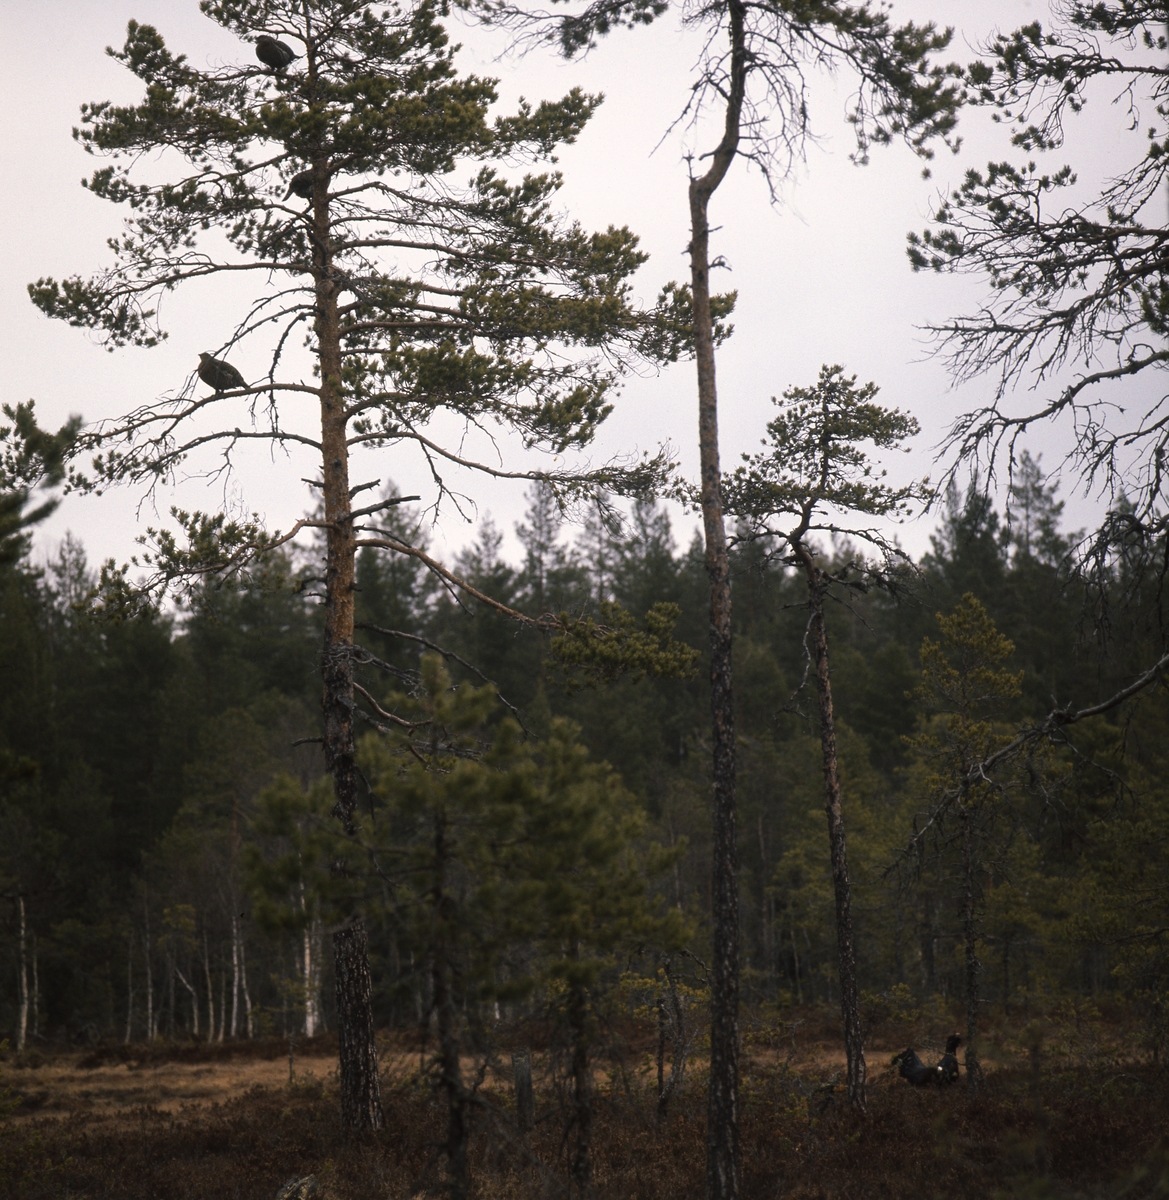 Här syns en tjädertupp i skogen vid en myr.